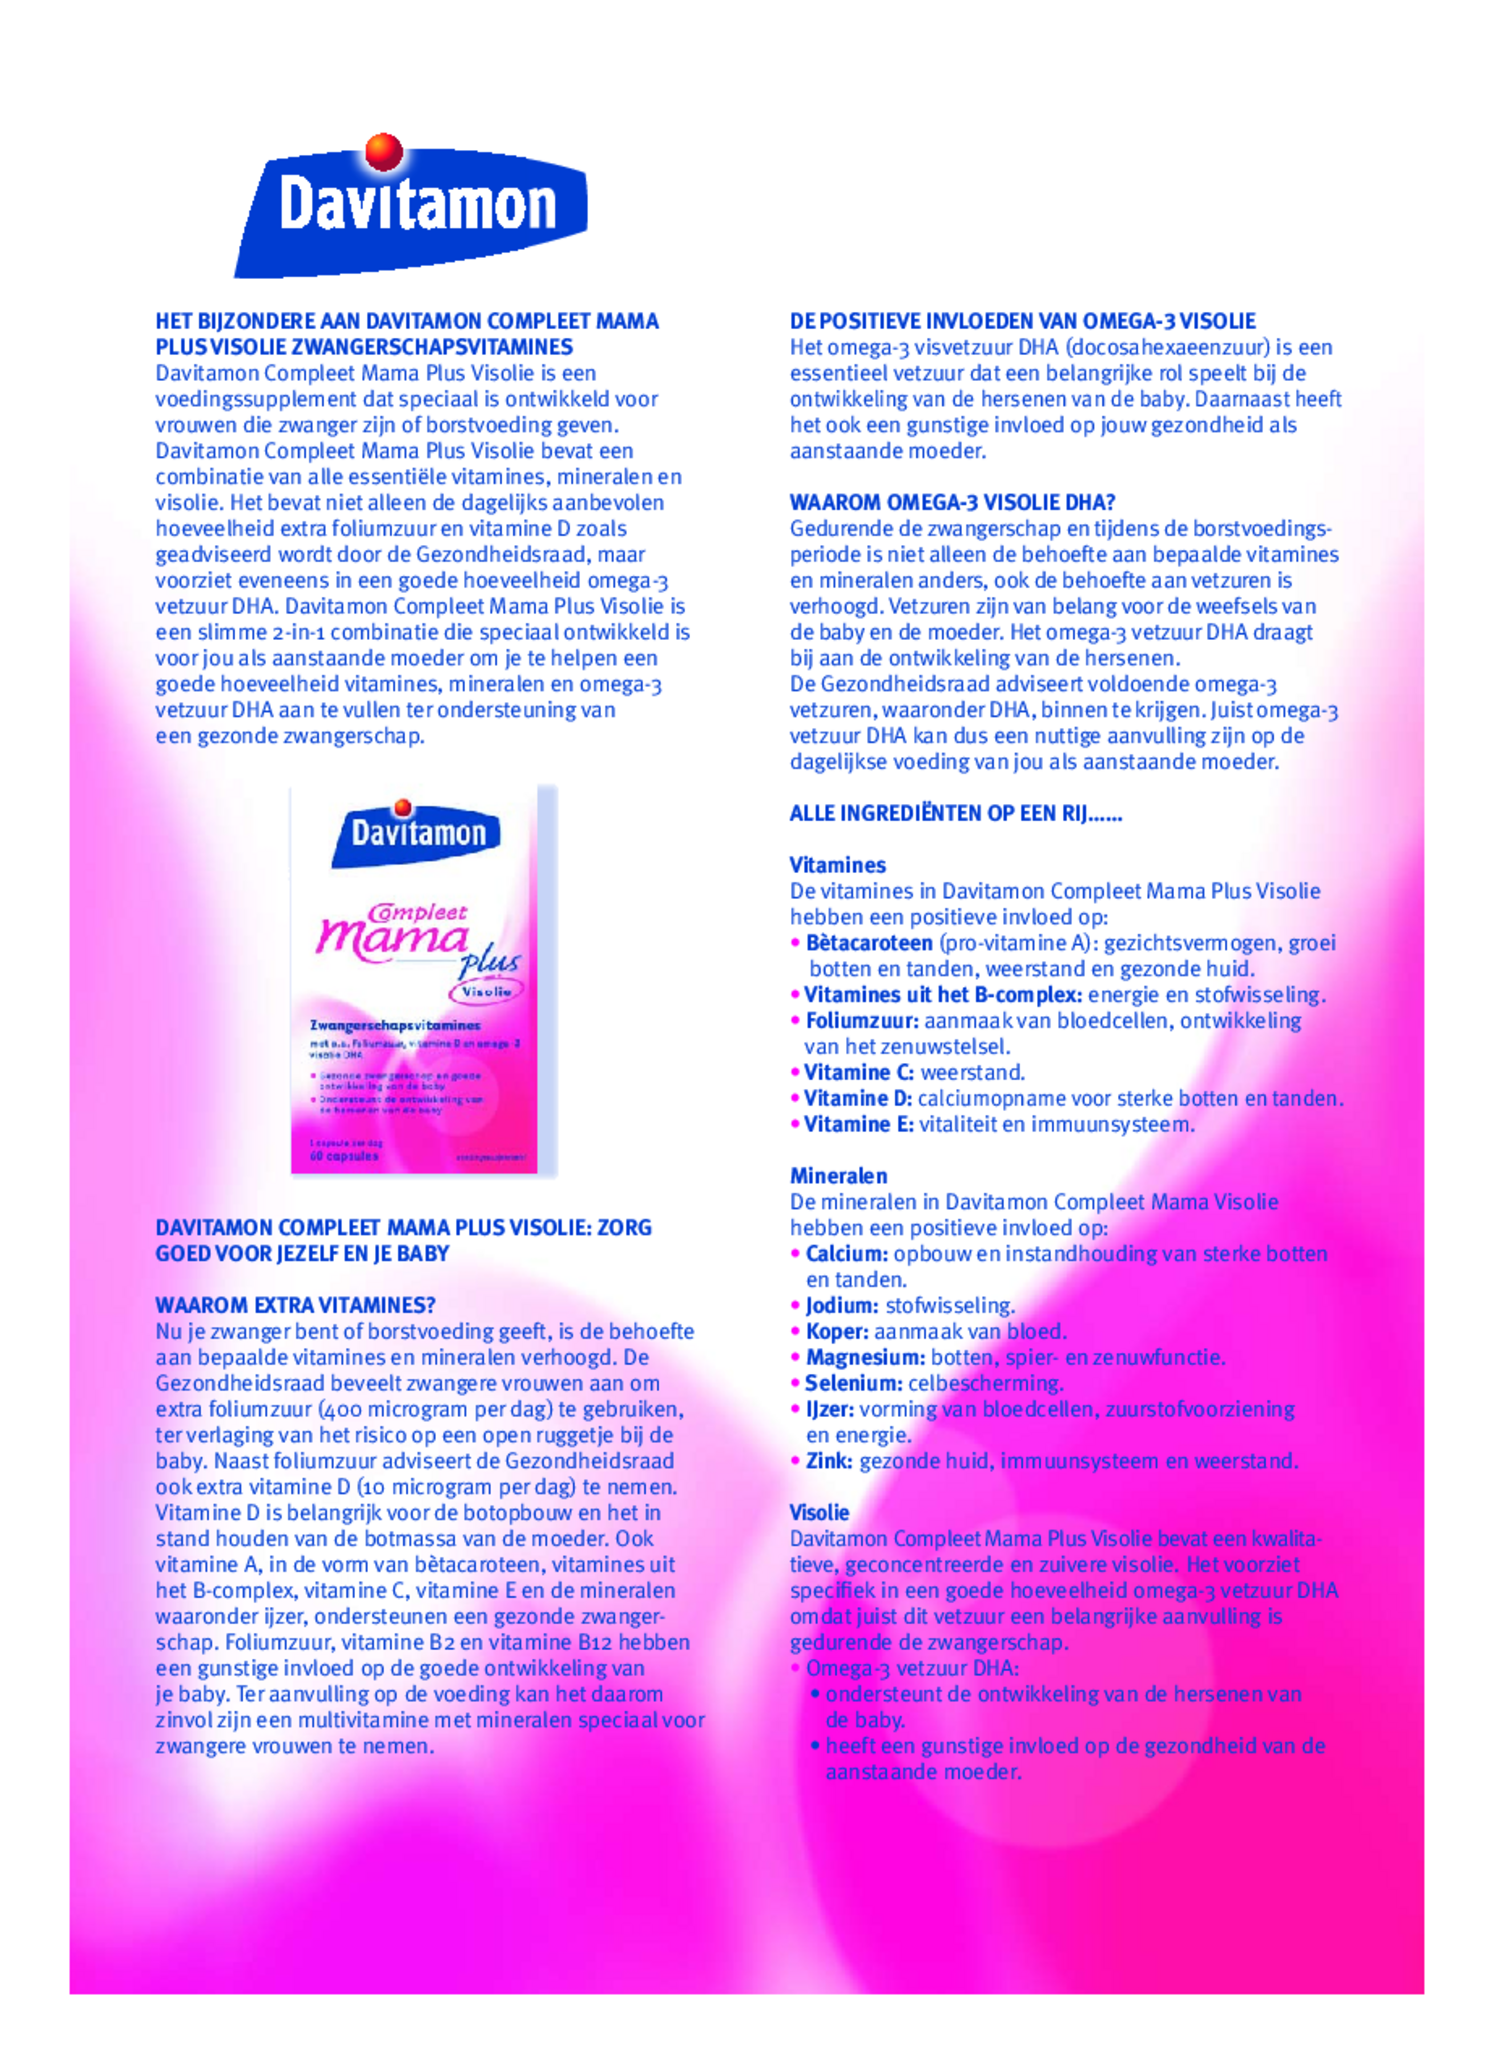 Compleet Zwanger + Omega-3 Visolie Capsules afbeelding van document #1, gebruiksaanwijzing